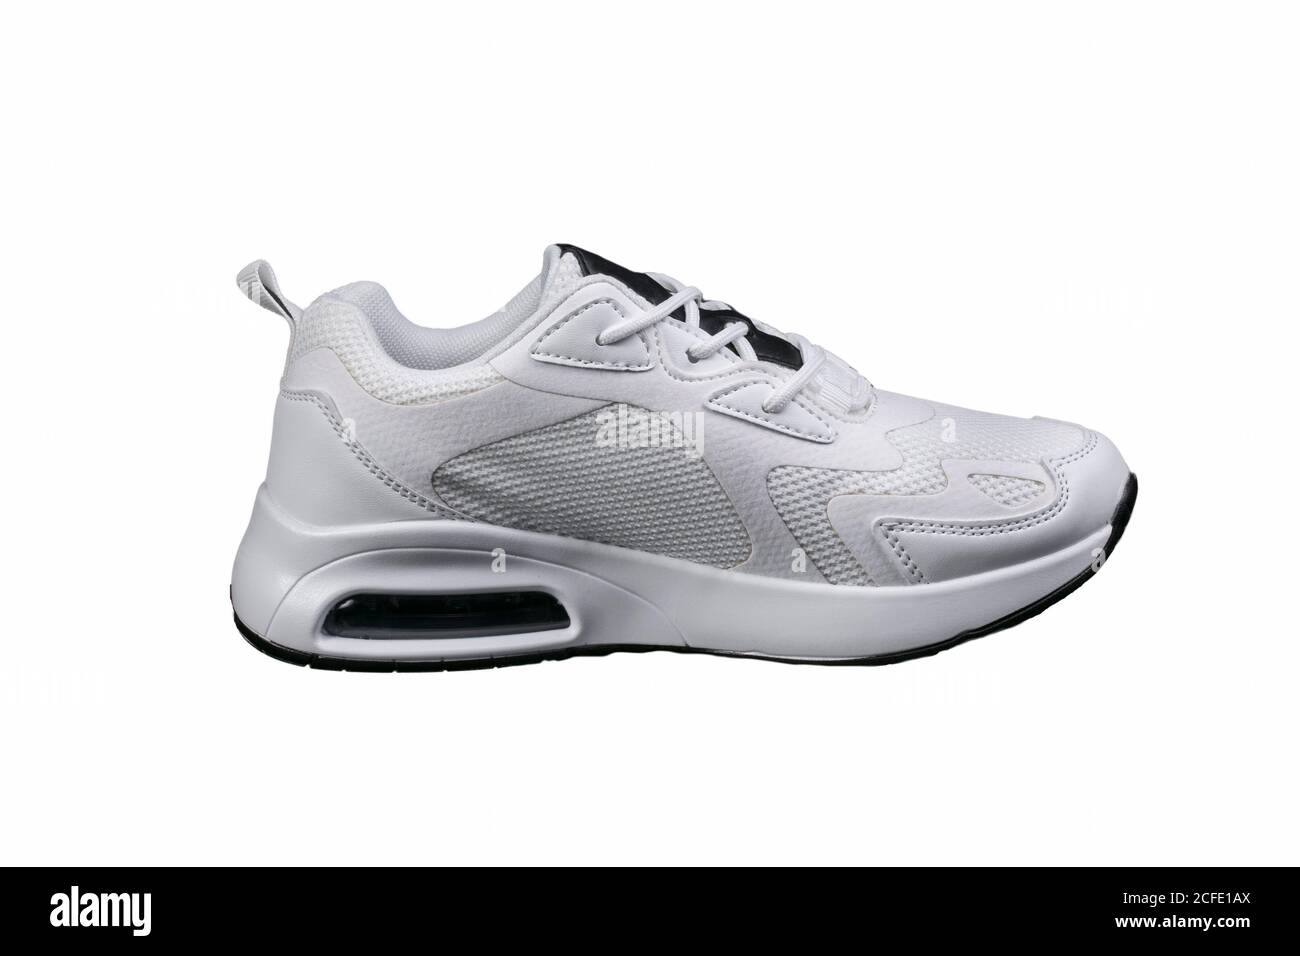 Sneaker bianche con dettagli neri isolati. Scarpe sportive su sfondo bianco. Foto Stock